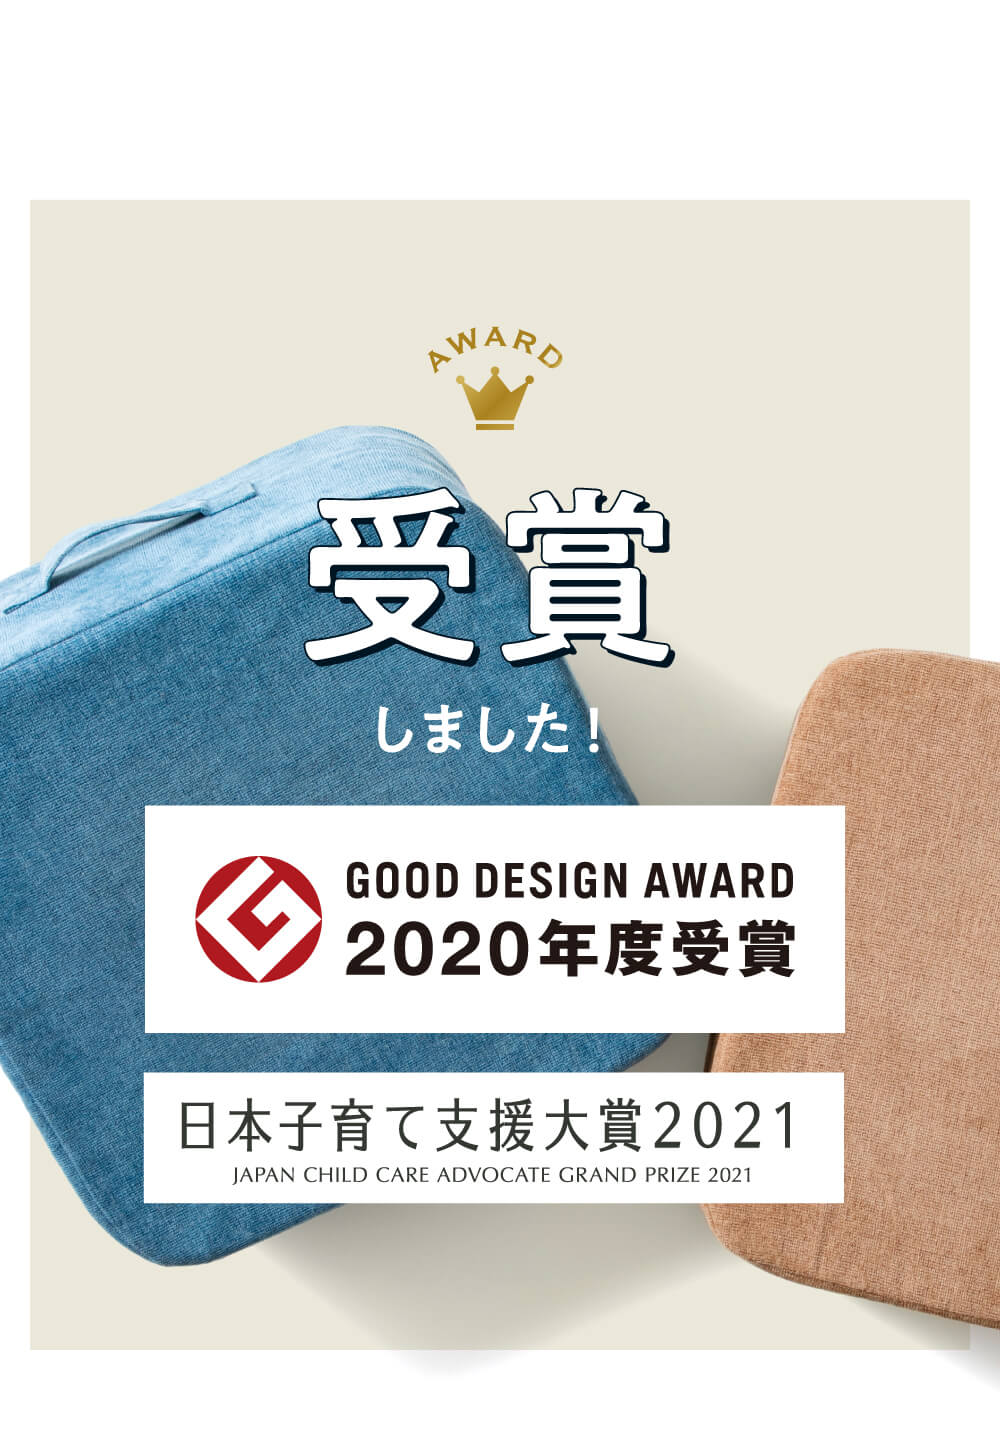 2020年度グッドデザイン賞、日本子育て支援大賞を受賞しました